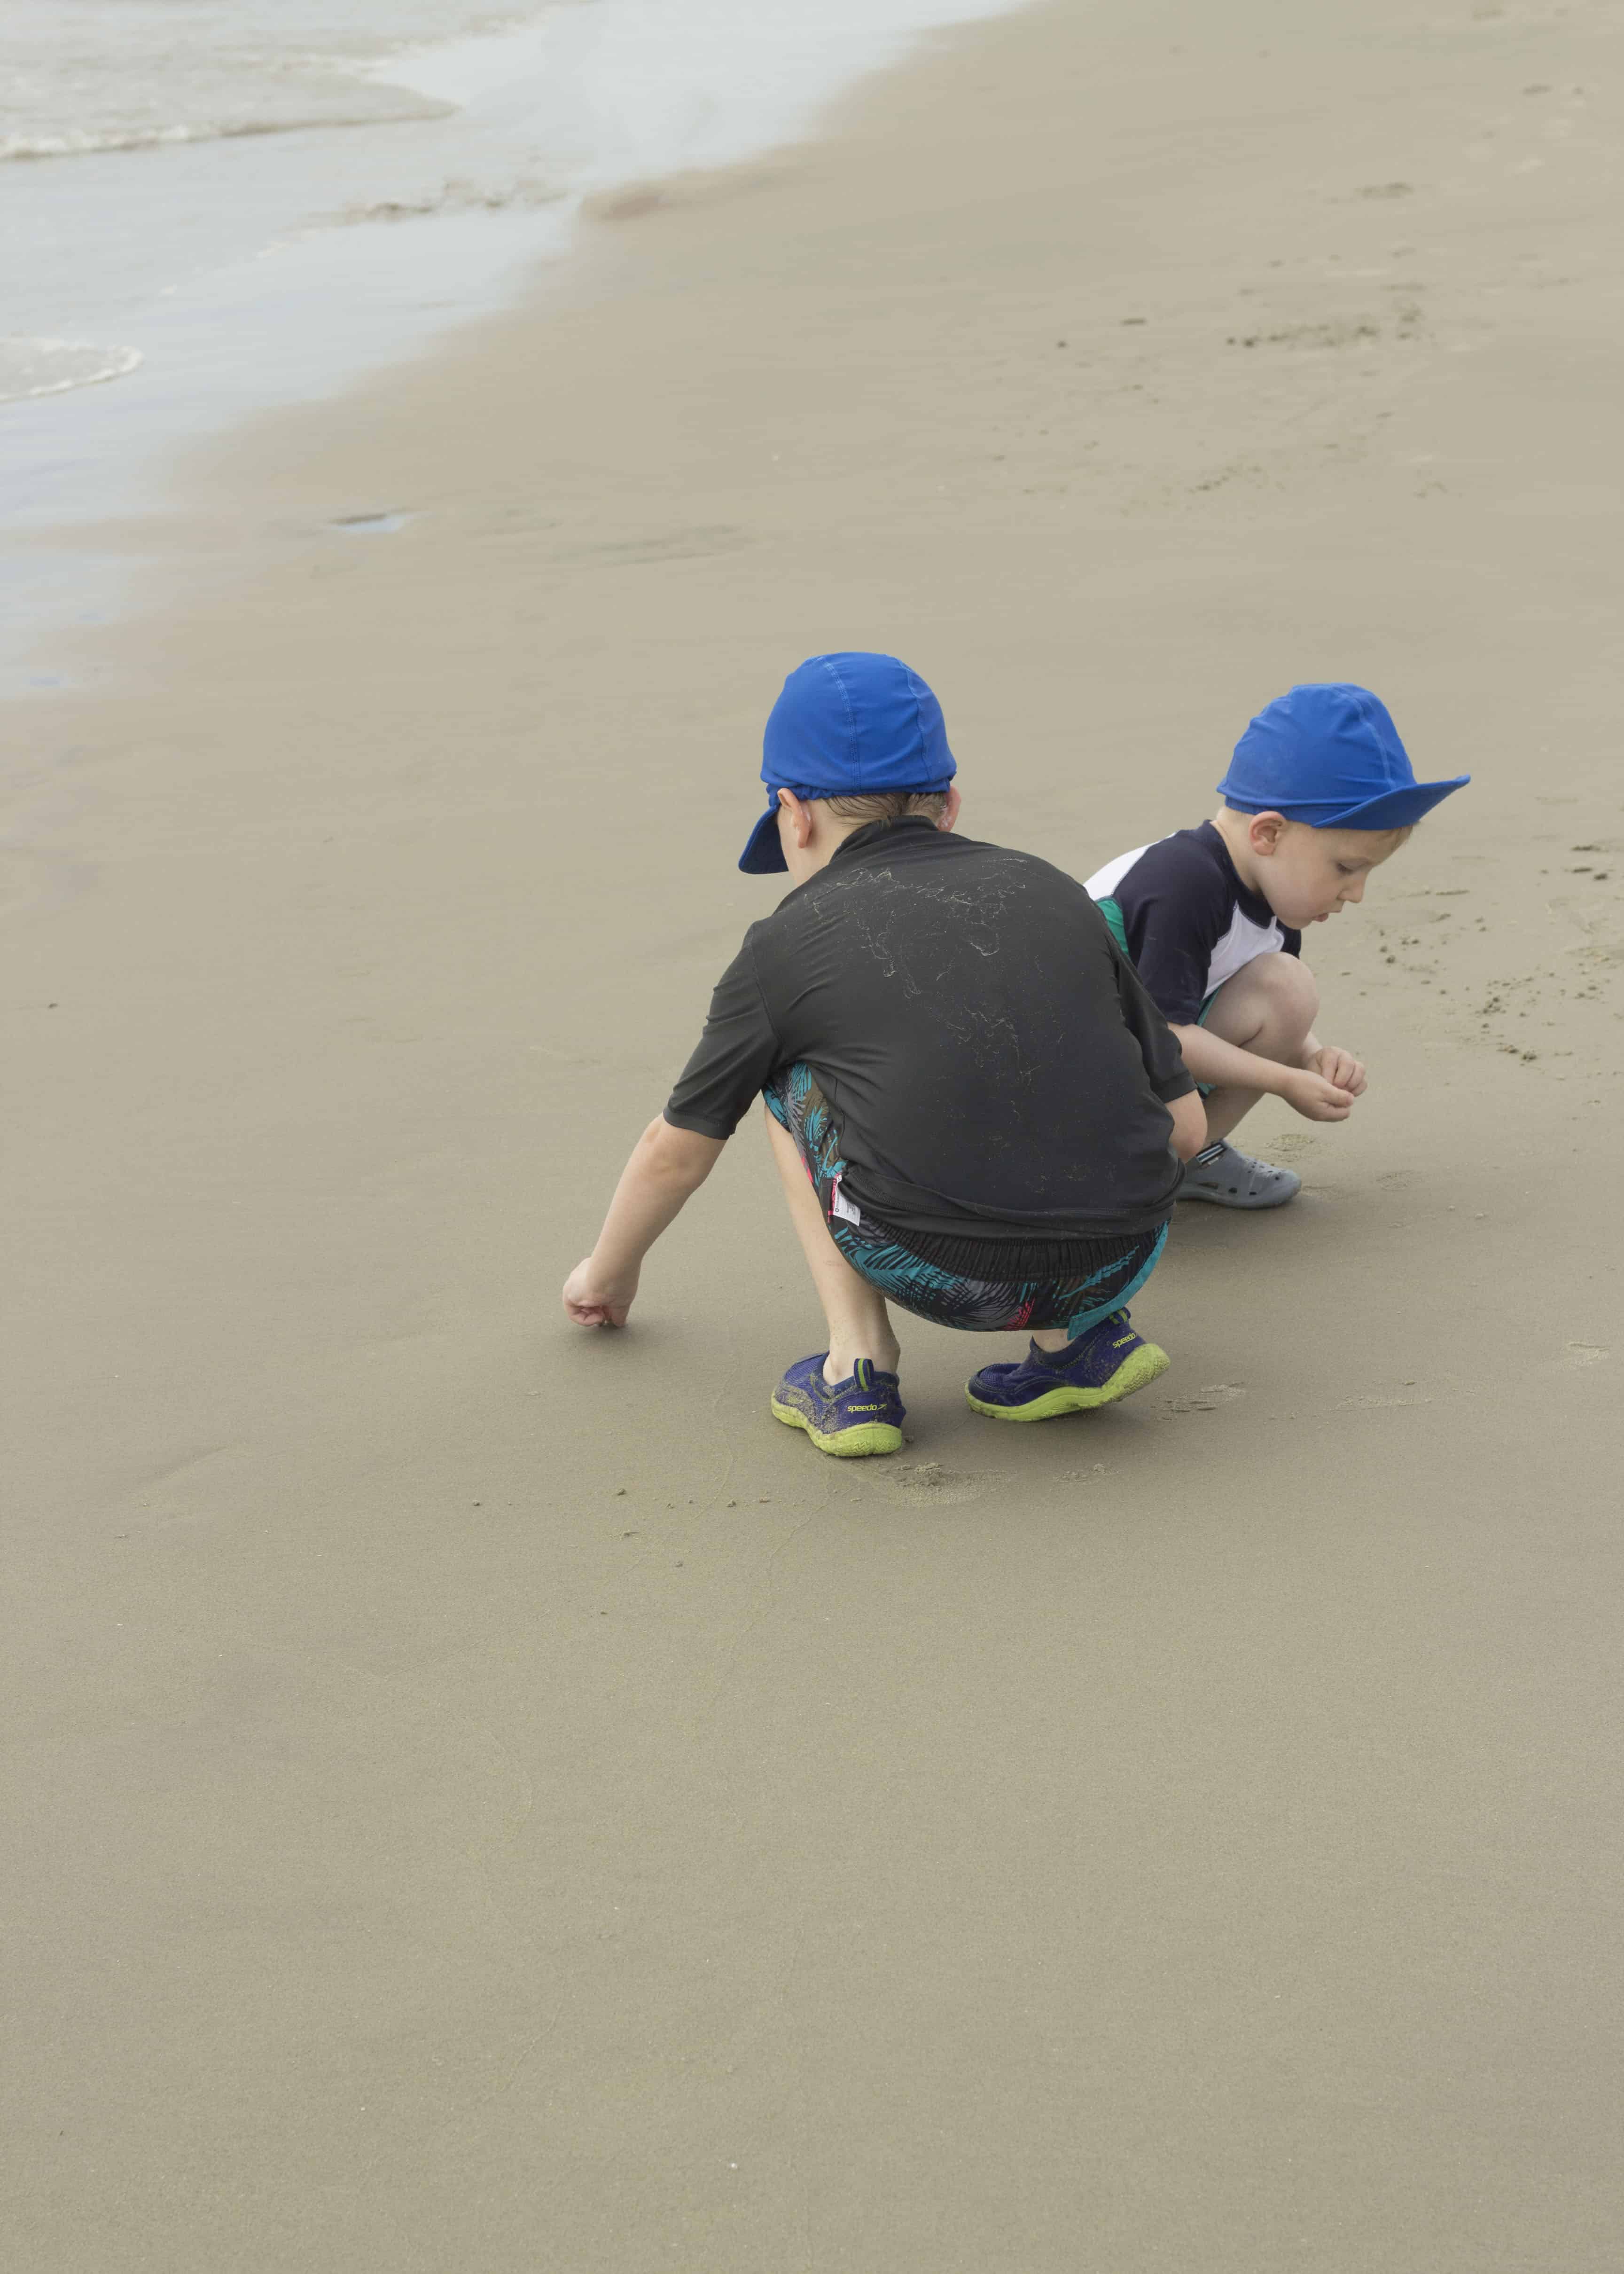 KIDS ON BEACH